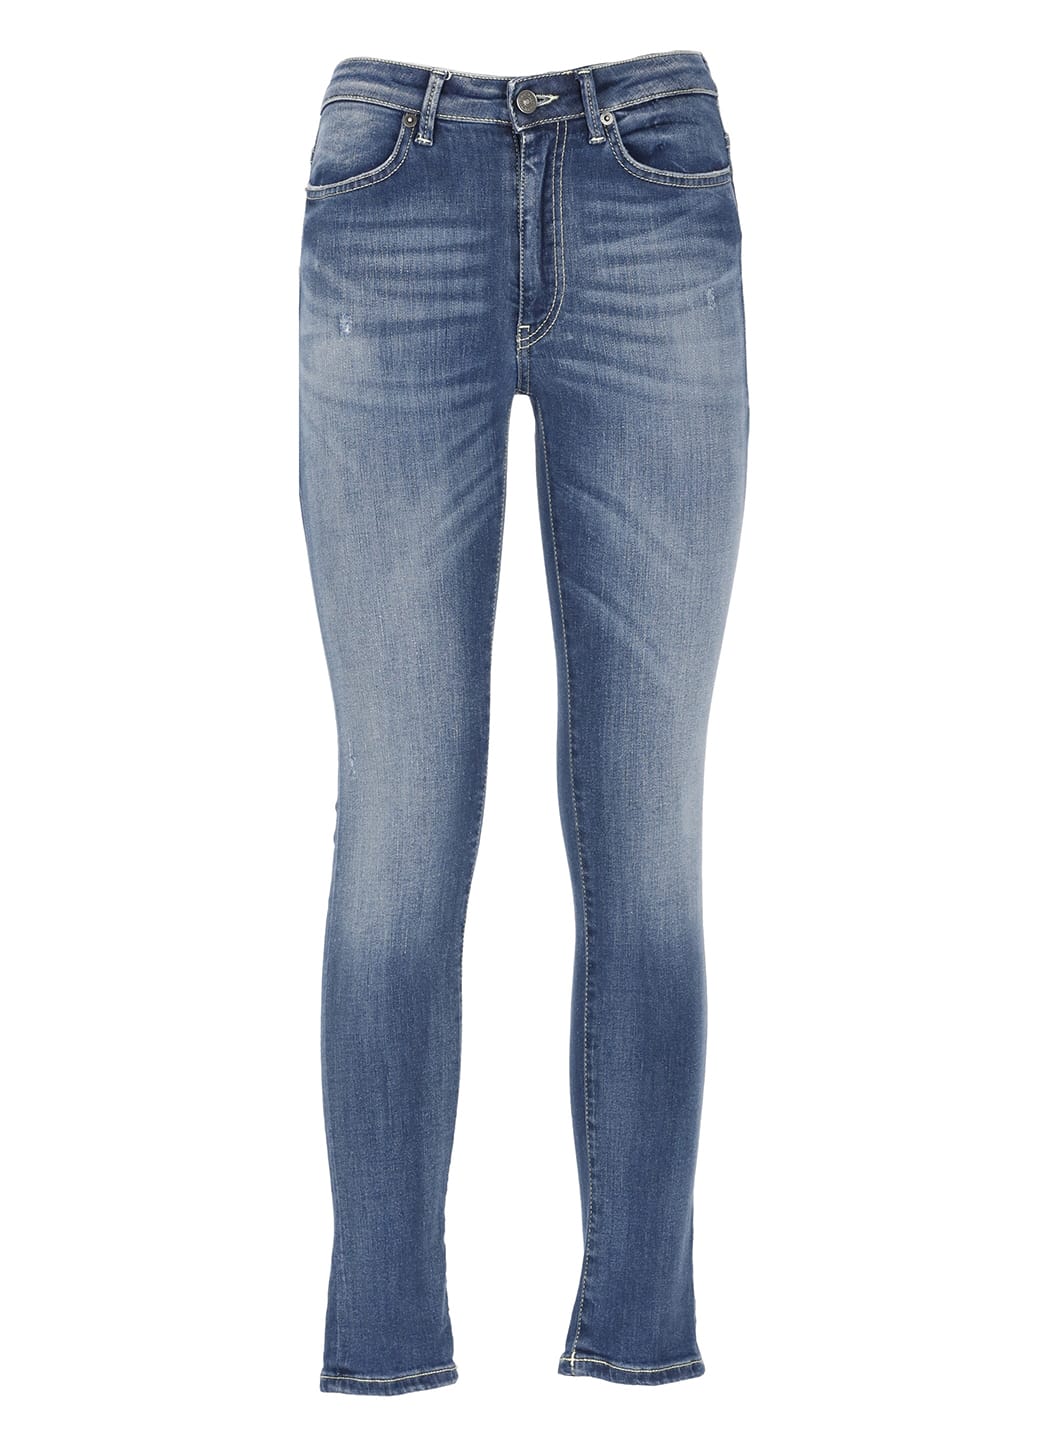 Dondup Iris Jeans